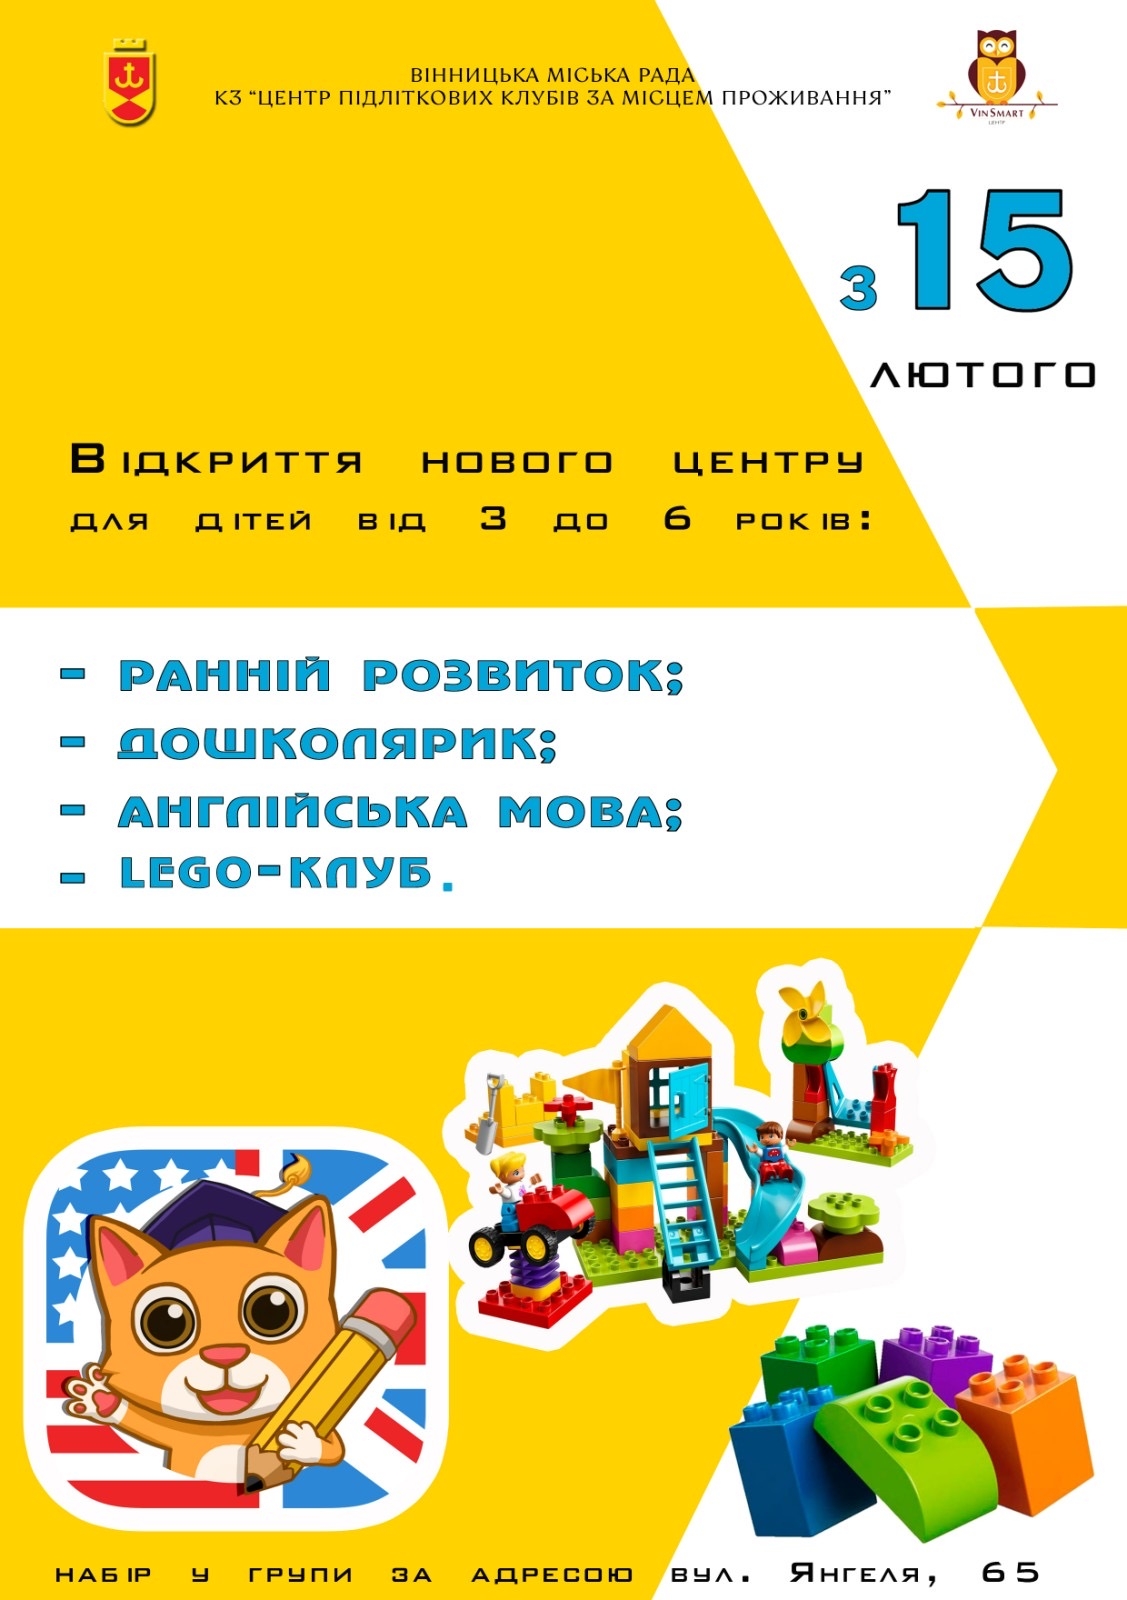 У Вінниці відкриється безкоштовний Центр для дошколяриків: з15 лютого стартує прийом заяв